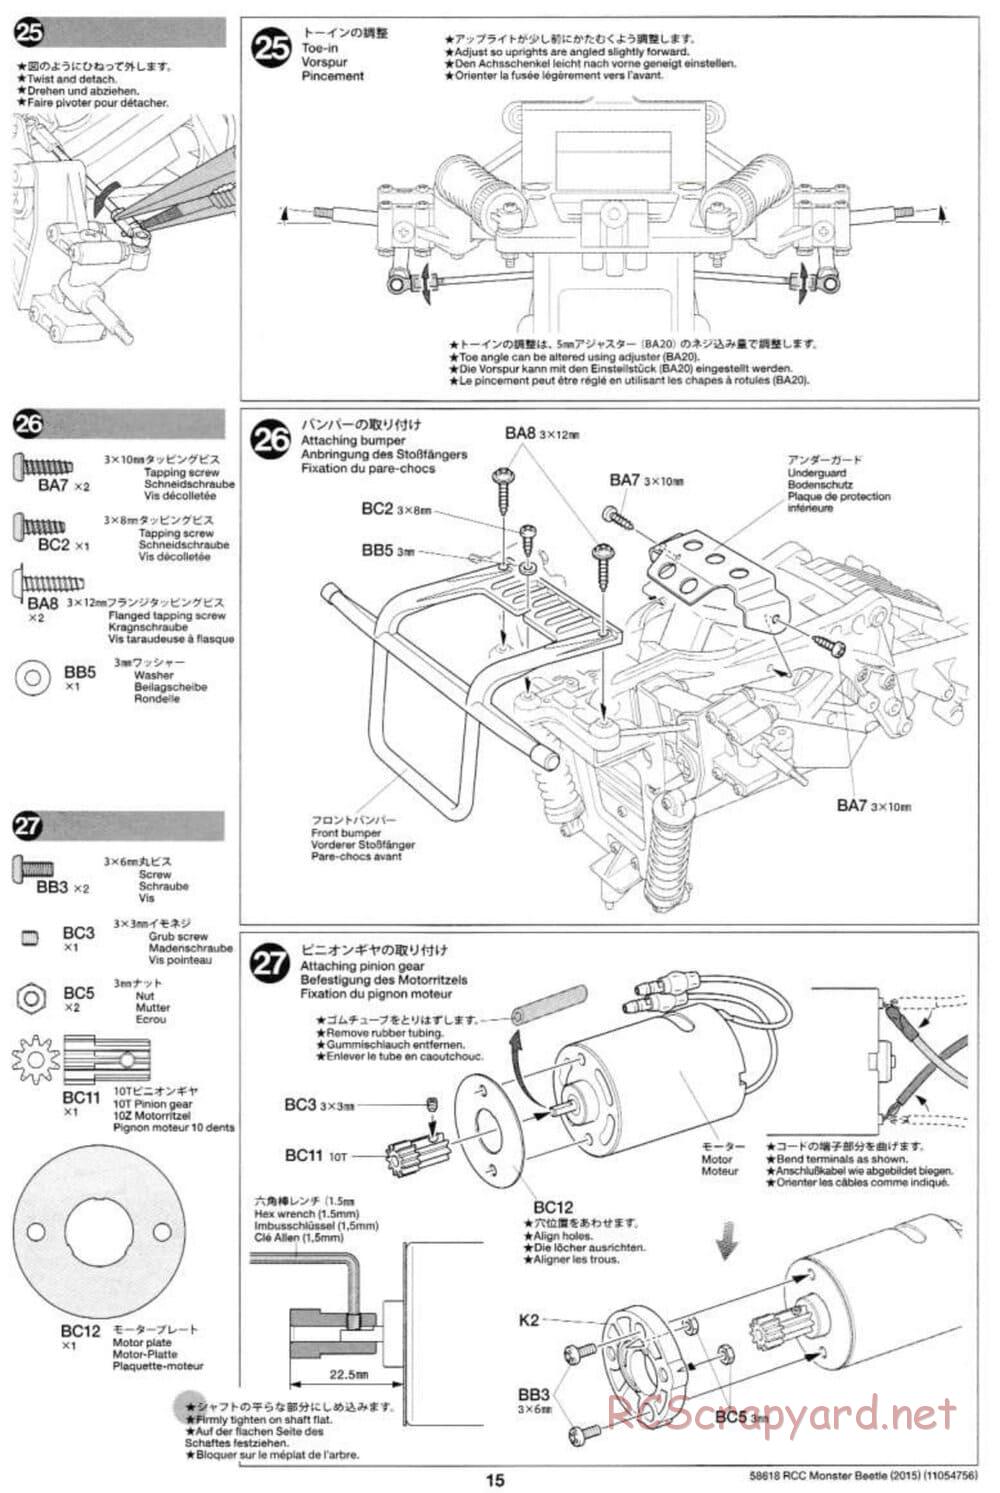 Tamiya - Monster Beetle 2015 - ORV Chassis - Manual - Page 15